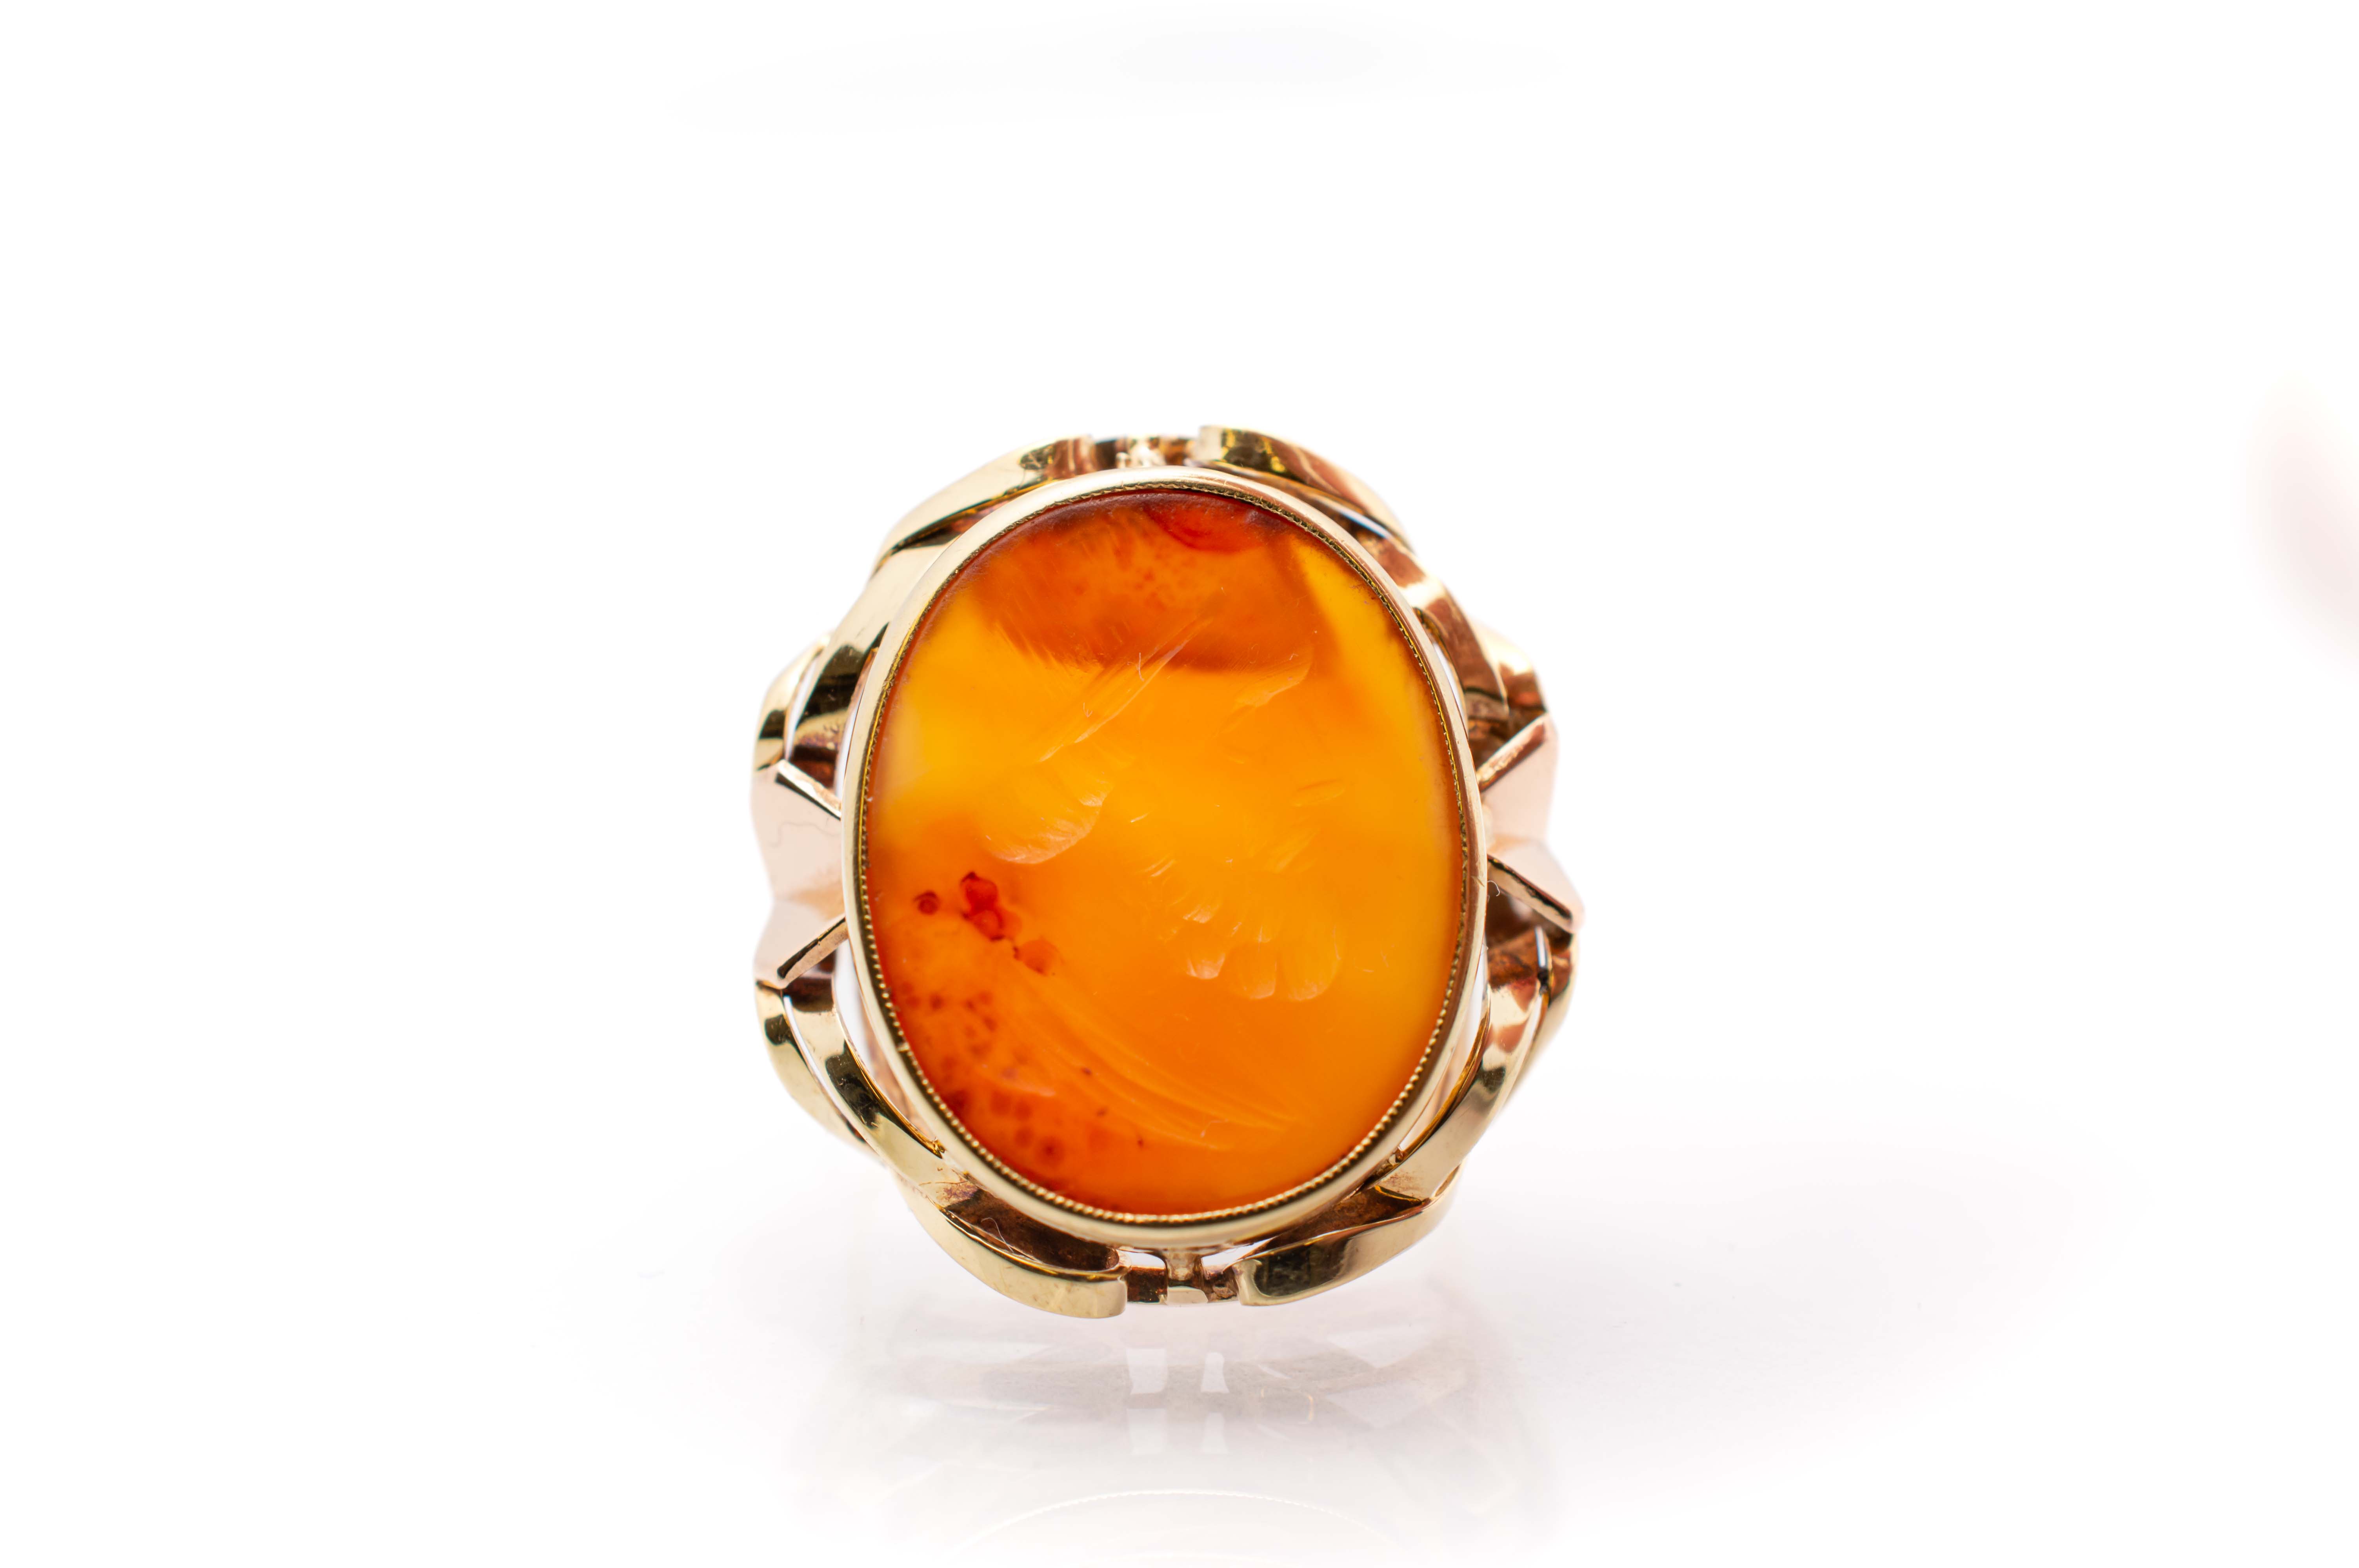 Zlatý prsten s oranžovým kamenem - jantar, vel. 59